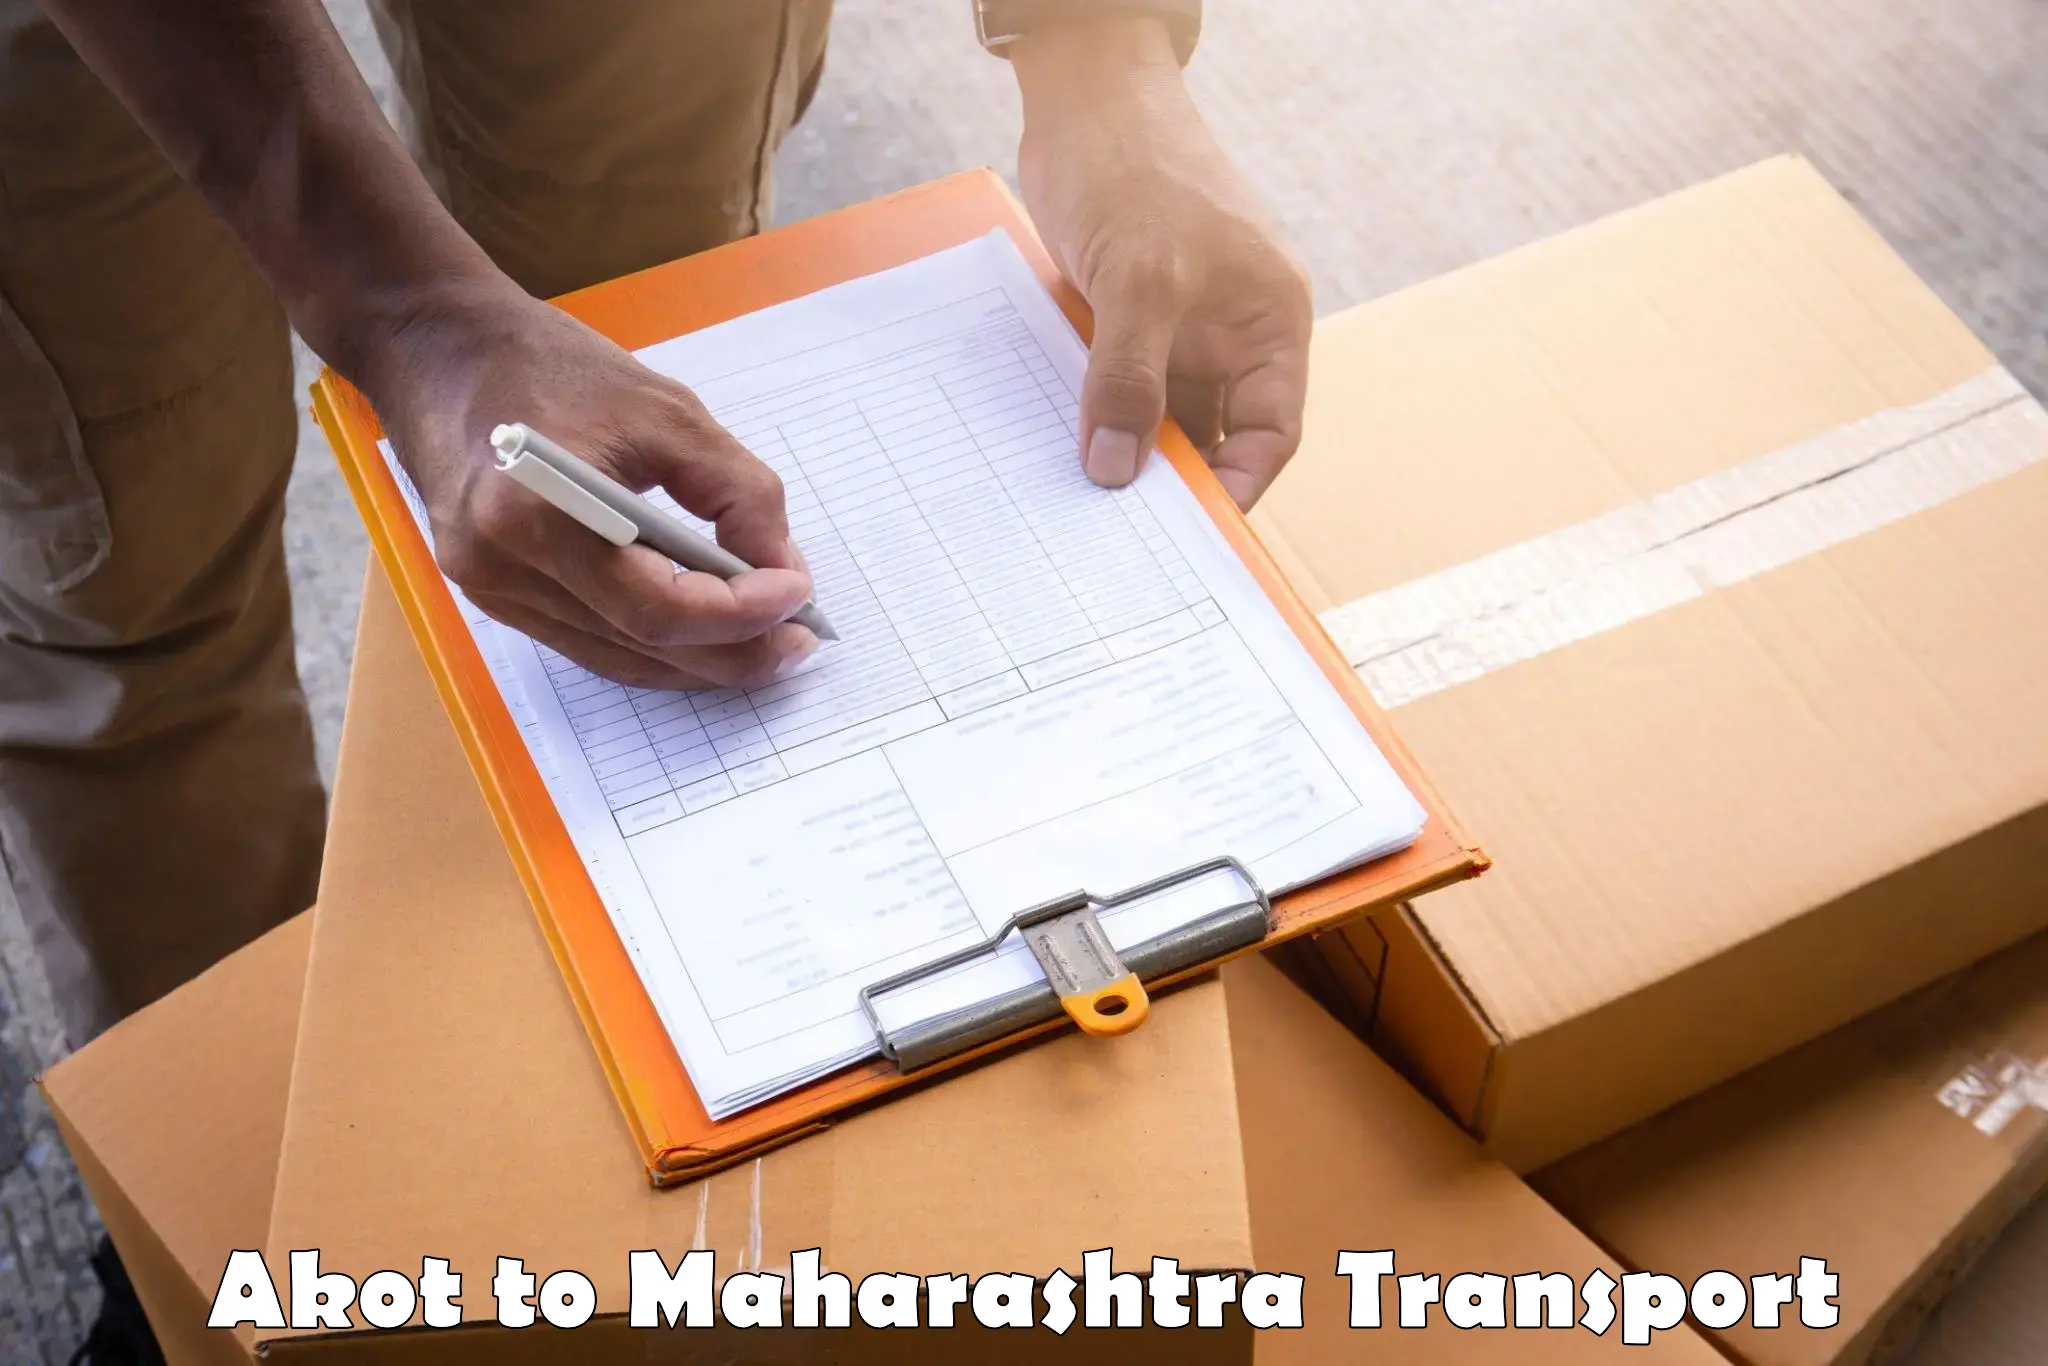 Cargo transportation services Akot to Maharashtra